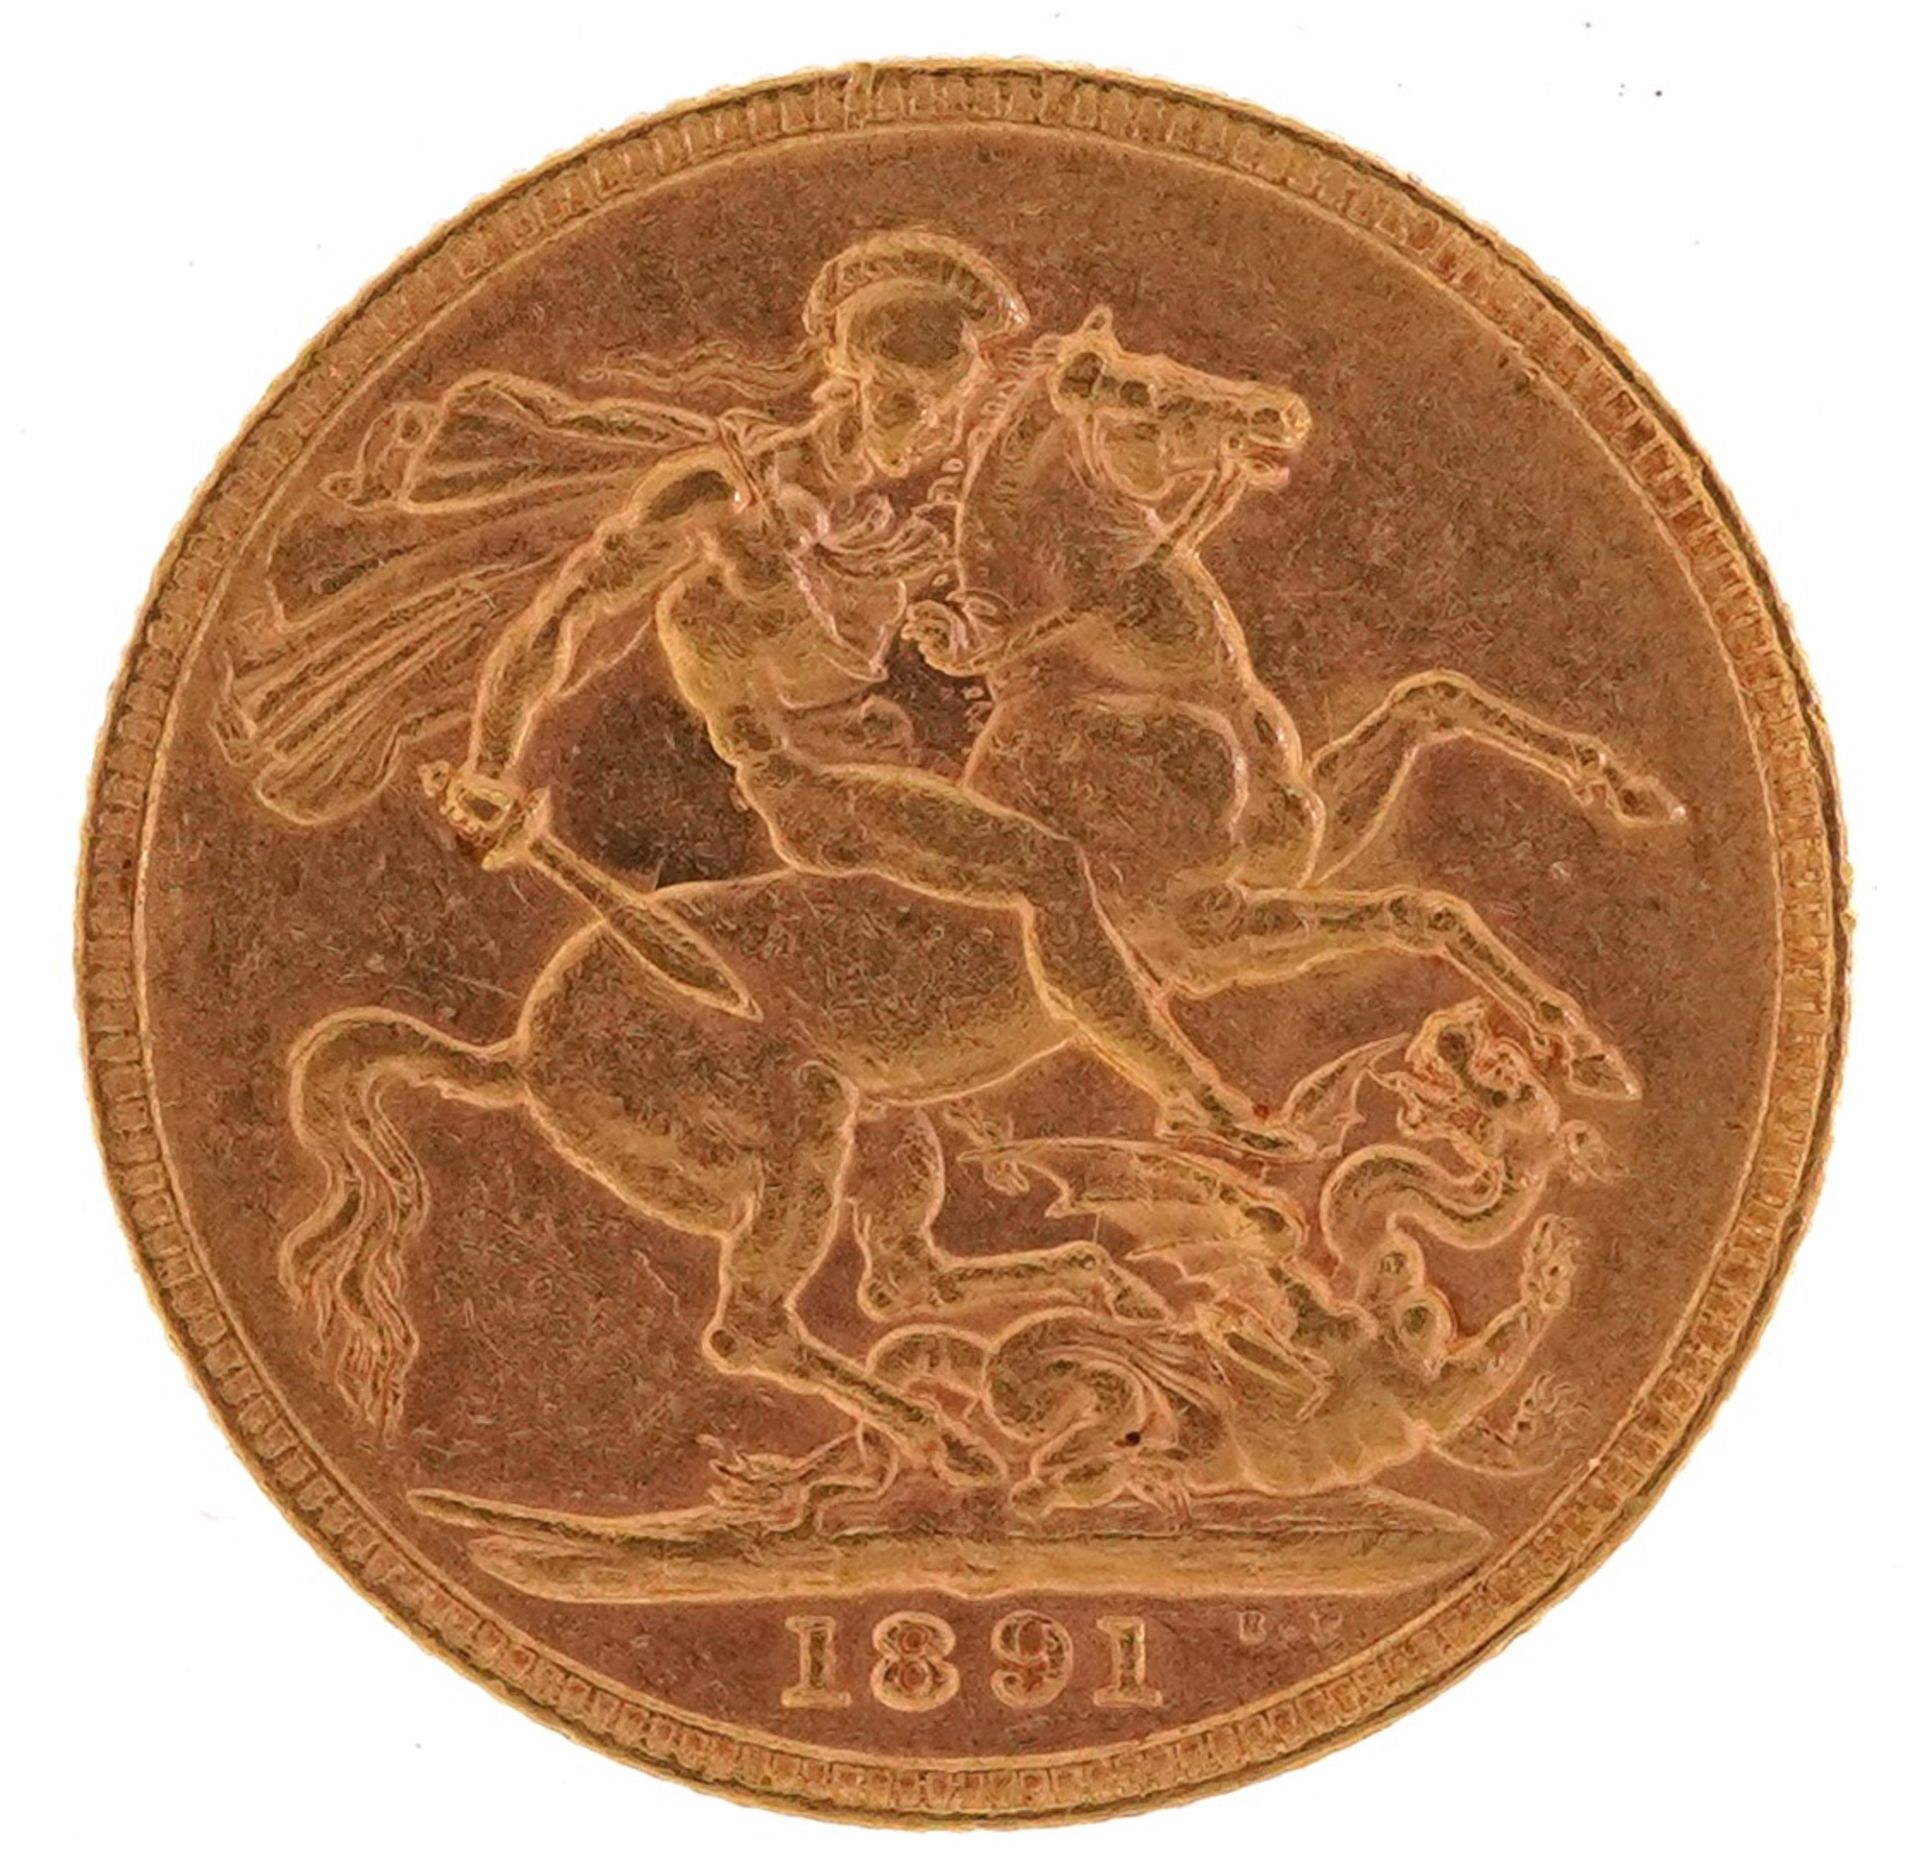 Queen Victoria Jubilee Head 1891 gold sovereign